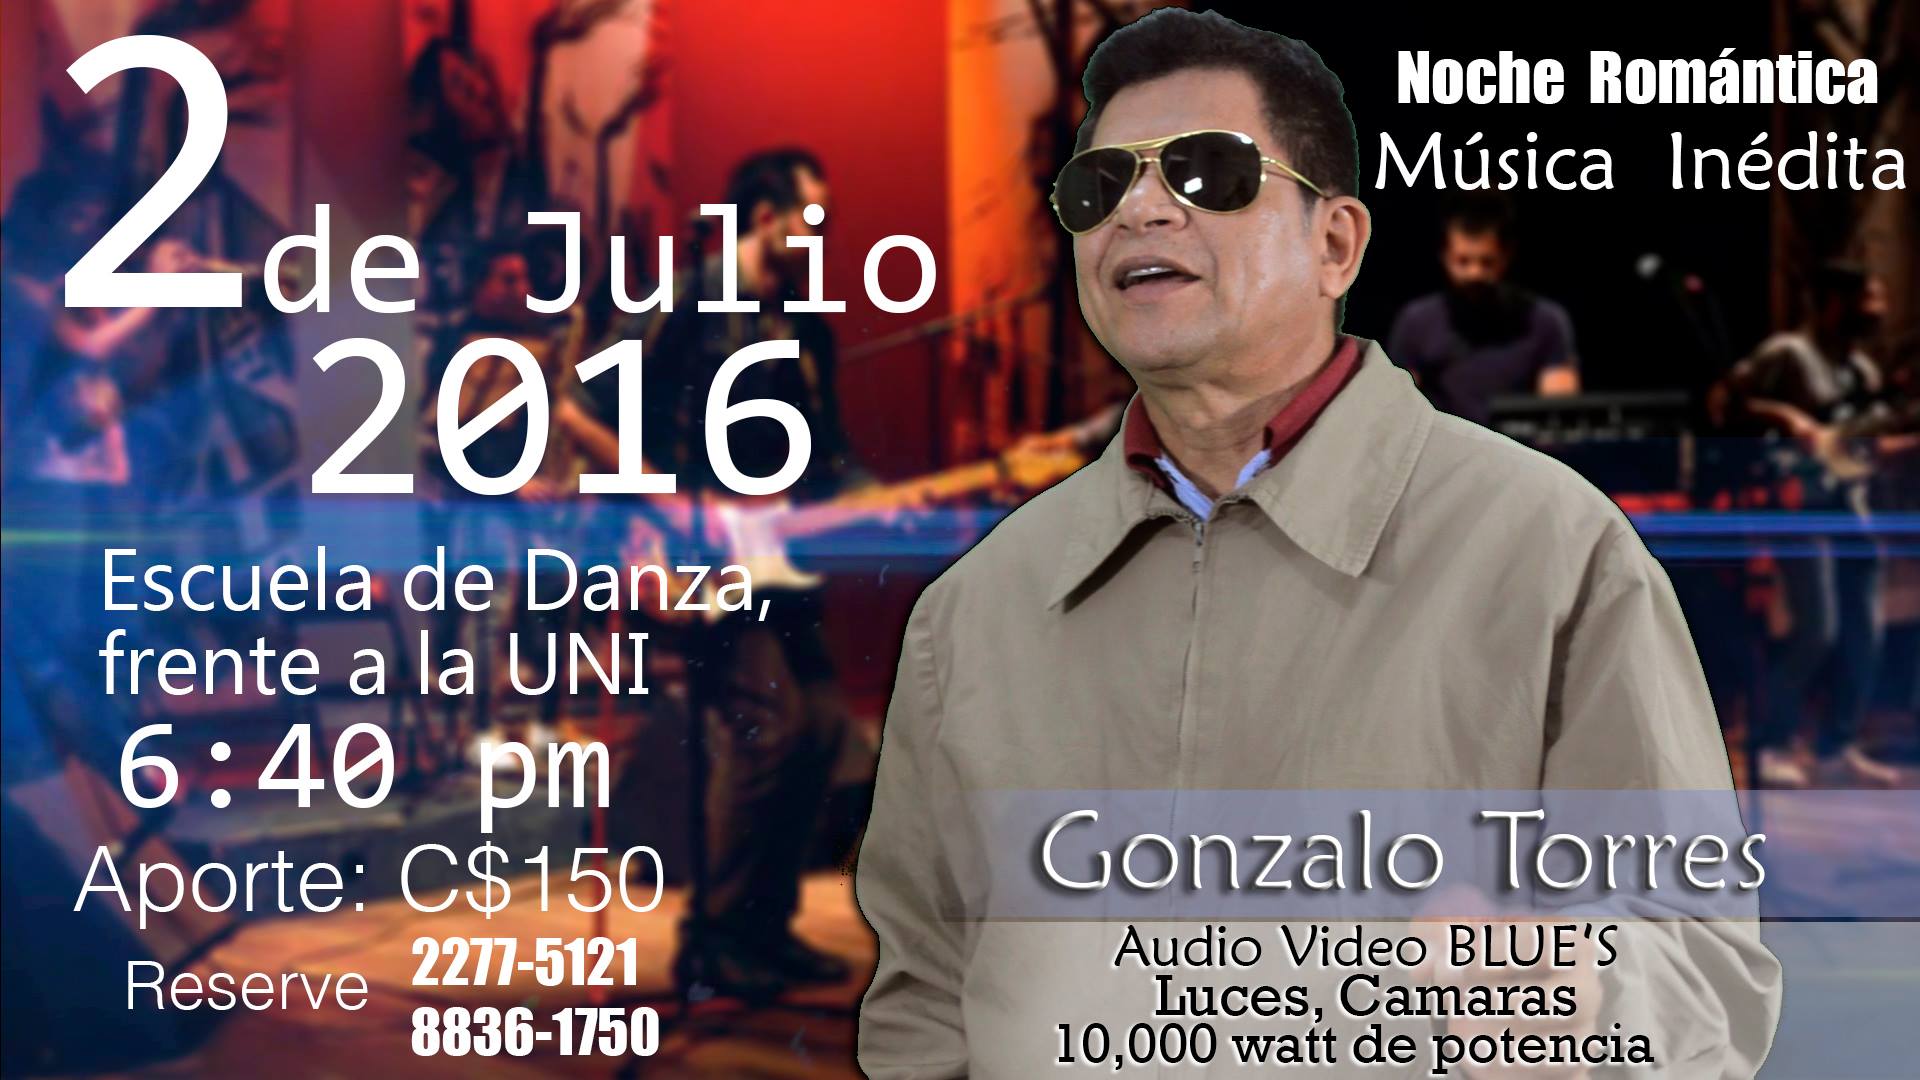 Gonzalo Torres invita al lanzamiento de su disco “Gracias” en Academia Nicaragüense De La Danza